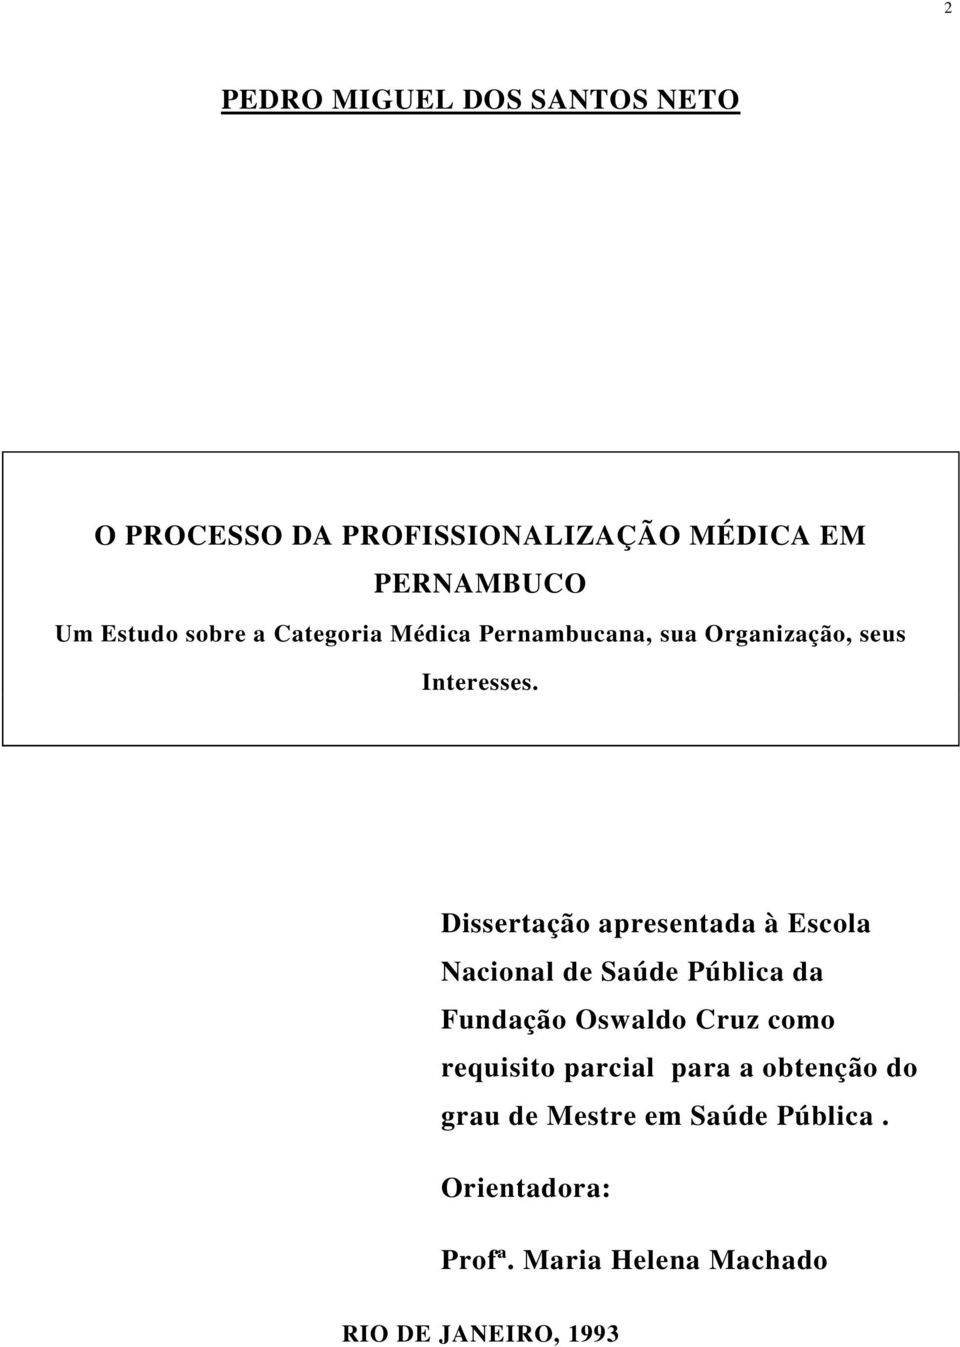 Dissertação apresentada à Escola Nacional de Saúde Pública da Fundação Oswaldo Cruz como